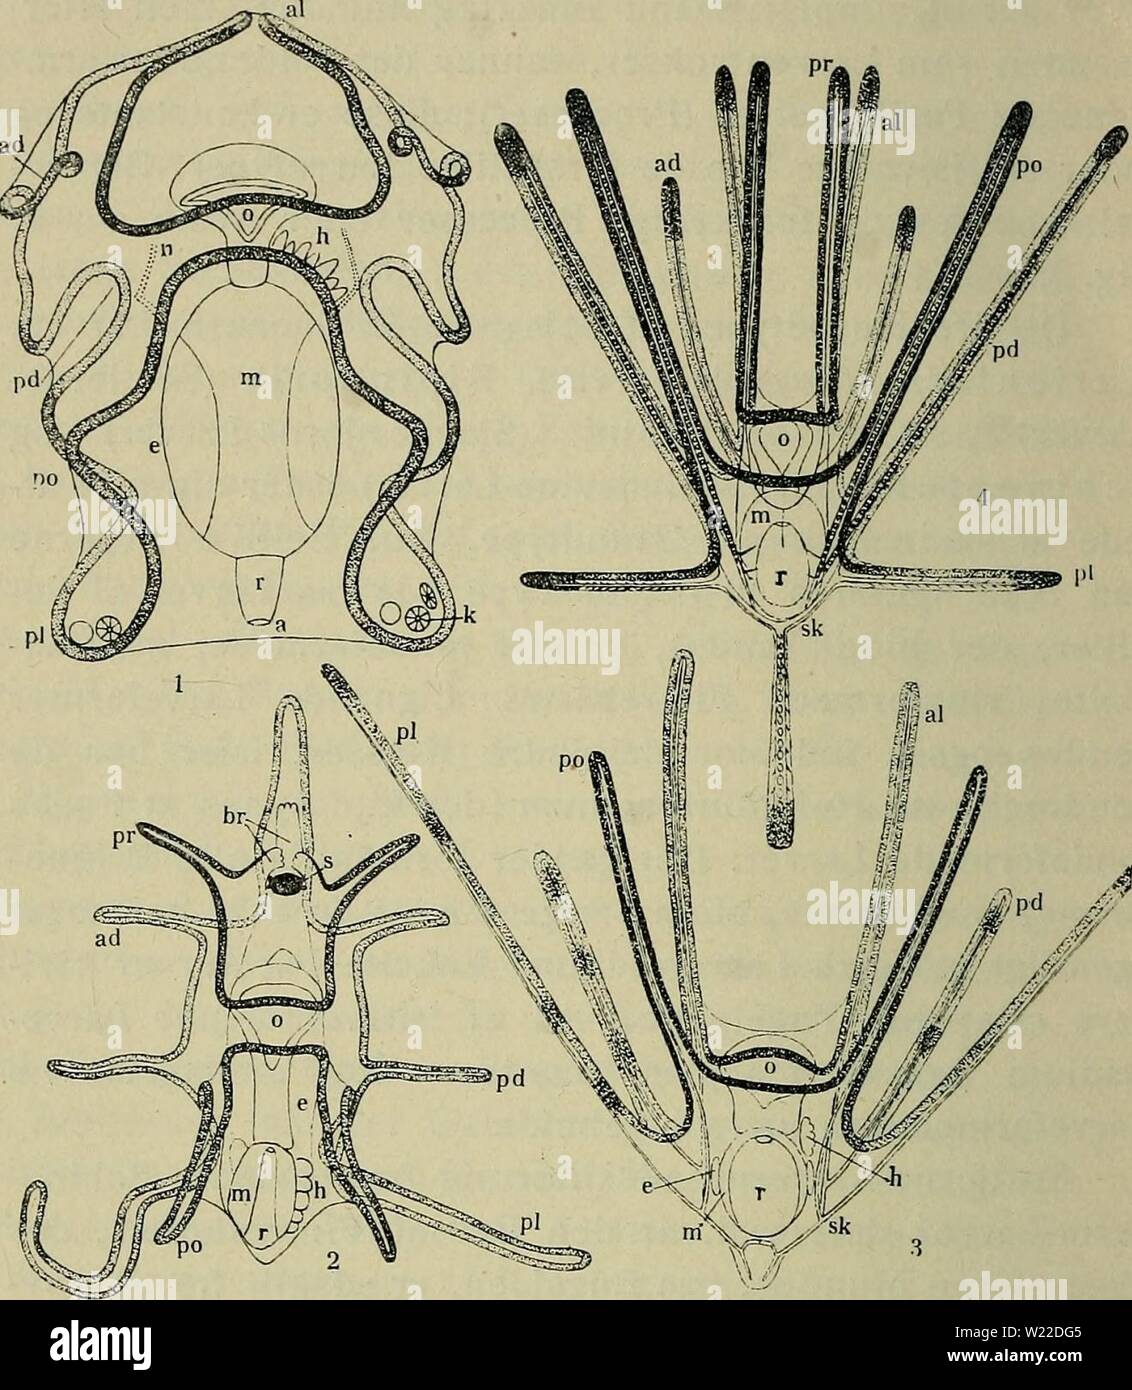 Archive image from page 11 of Danmarks fauna; illustrerede haandbøger over. Danmarks fauna; illustrerede haandbøger over den danske dyreverden..  danmarksfaunaill27dans Year: 1907  8    Fig. 3. De 4 Hovedtyper af Echlnodermlarver. 1. Auricularia, Larve af en Søpølse (Synapta); 2. Bipinnaria (i Brachiolaria-Stadiet), Larve af en Søstjerne (Asterias); 3. Ophiopluteus compressus, Larve af en Slangestjerne; 4. Echinopluteus, Larve af et Søpind- svin (Echinocardium cordatum). L efter Semon; 2. efter A. Agassiz, lidt ændret, a. Gataabning; ad. anterodorsale ell. forreste Rygarm; al. antero- laterale Stock Photo